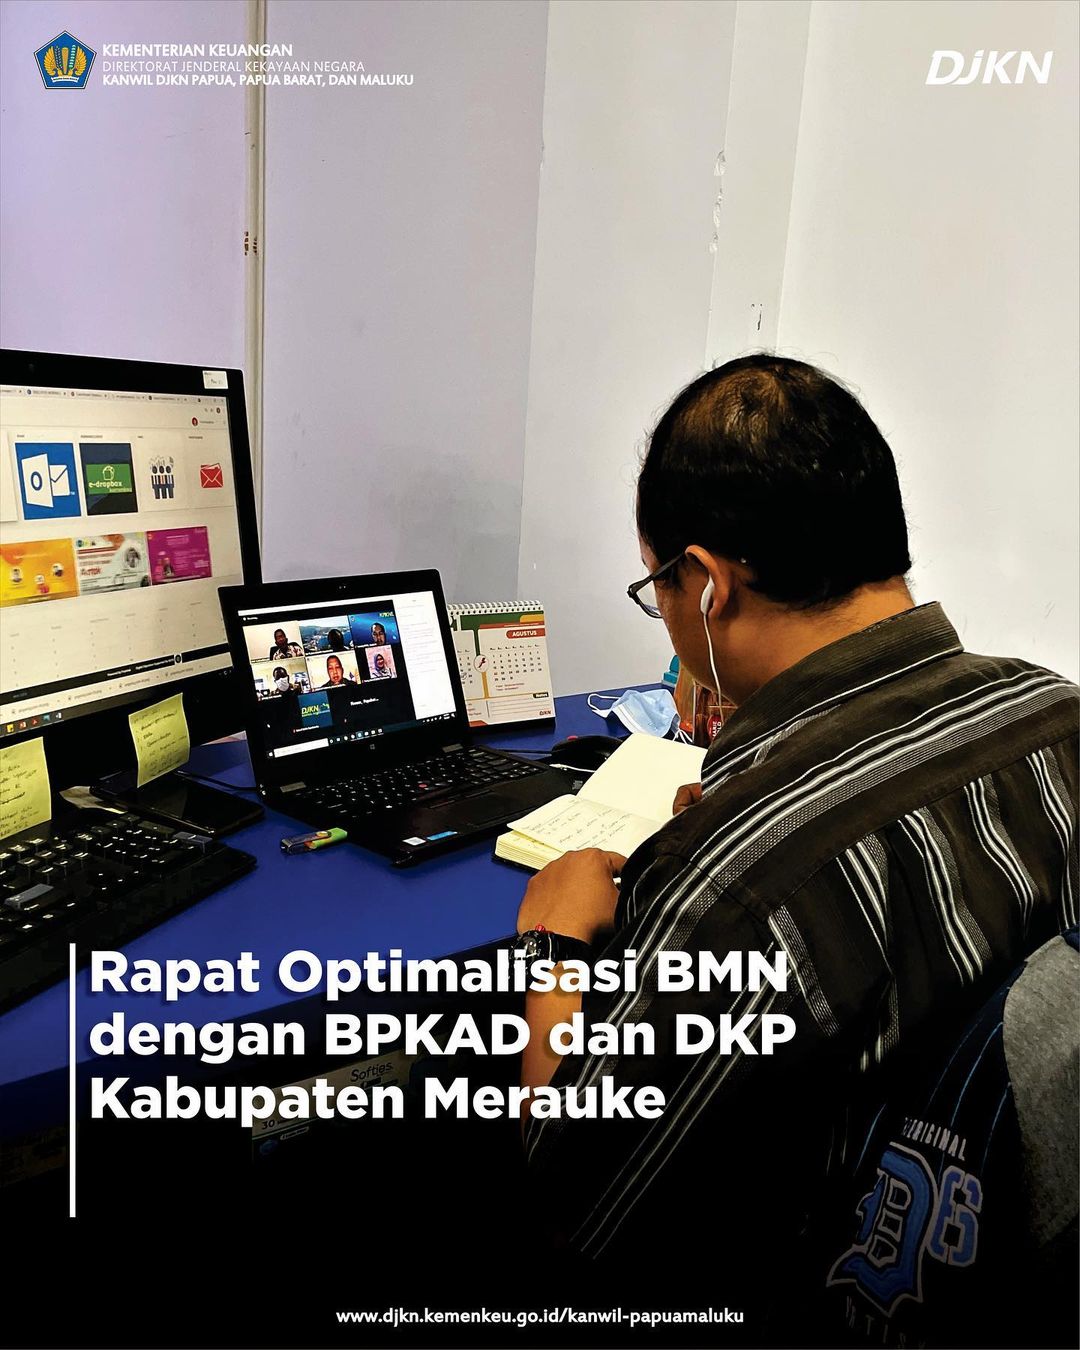 Rapat Optimalisasi BMN bersama BPKAD dan DKP Kabupaten Merauke